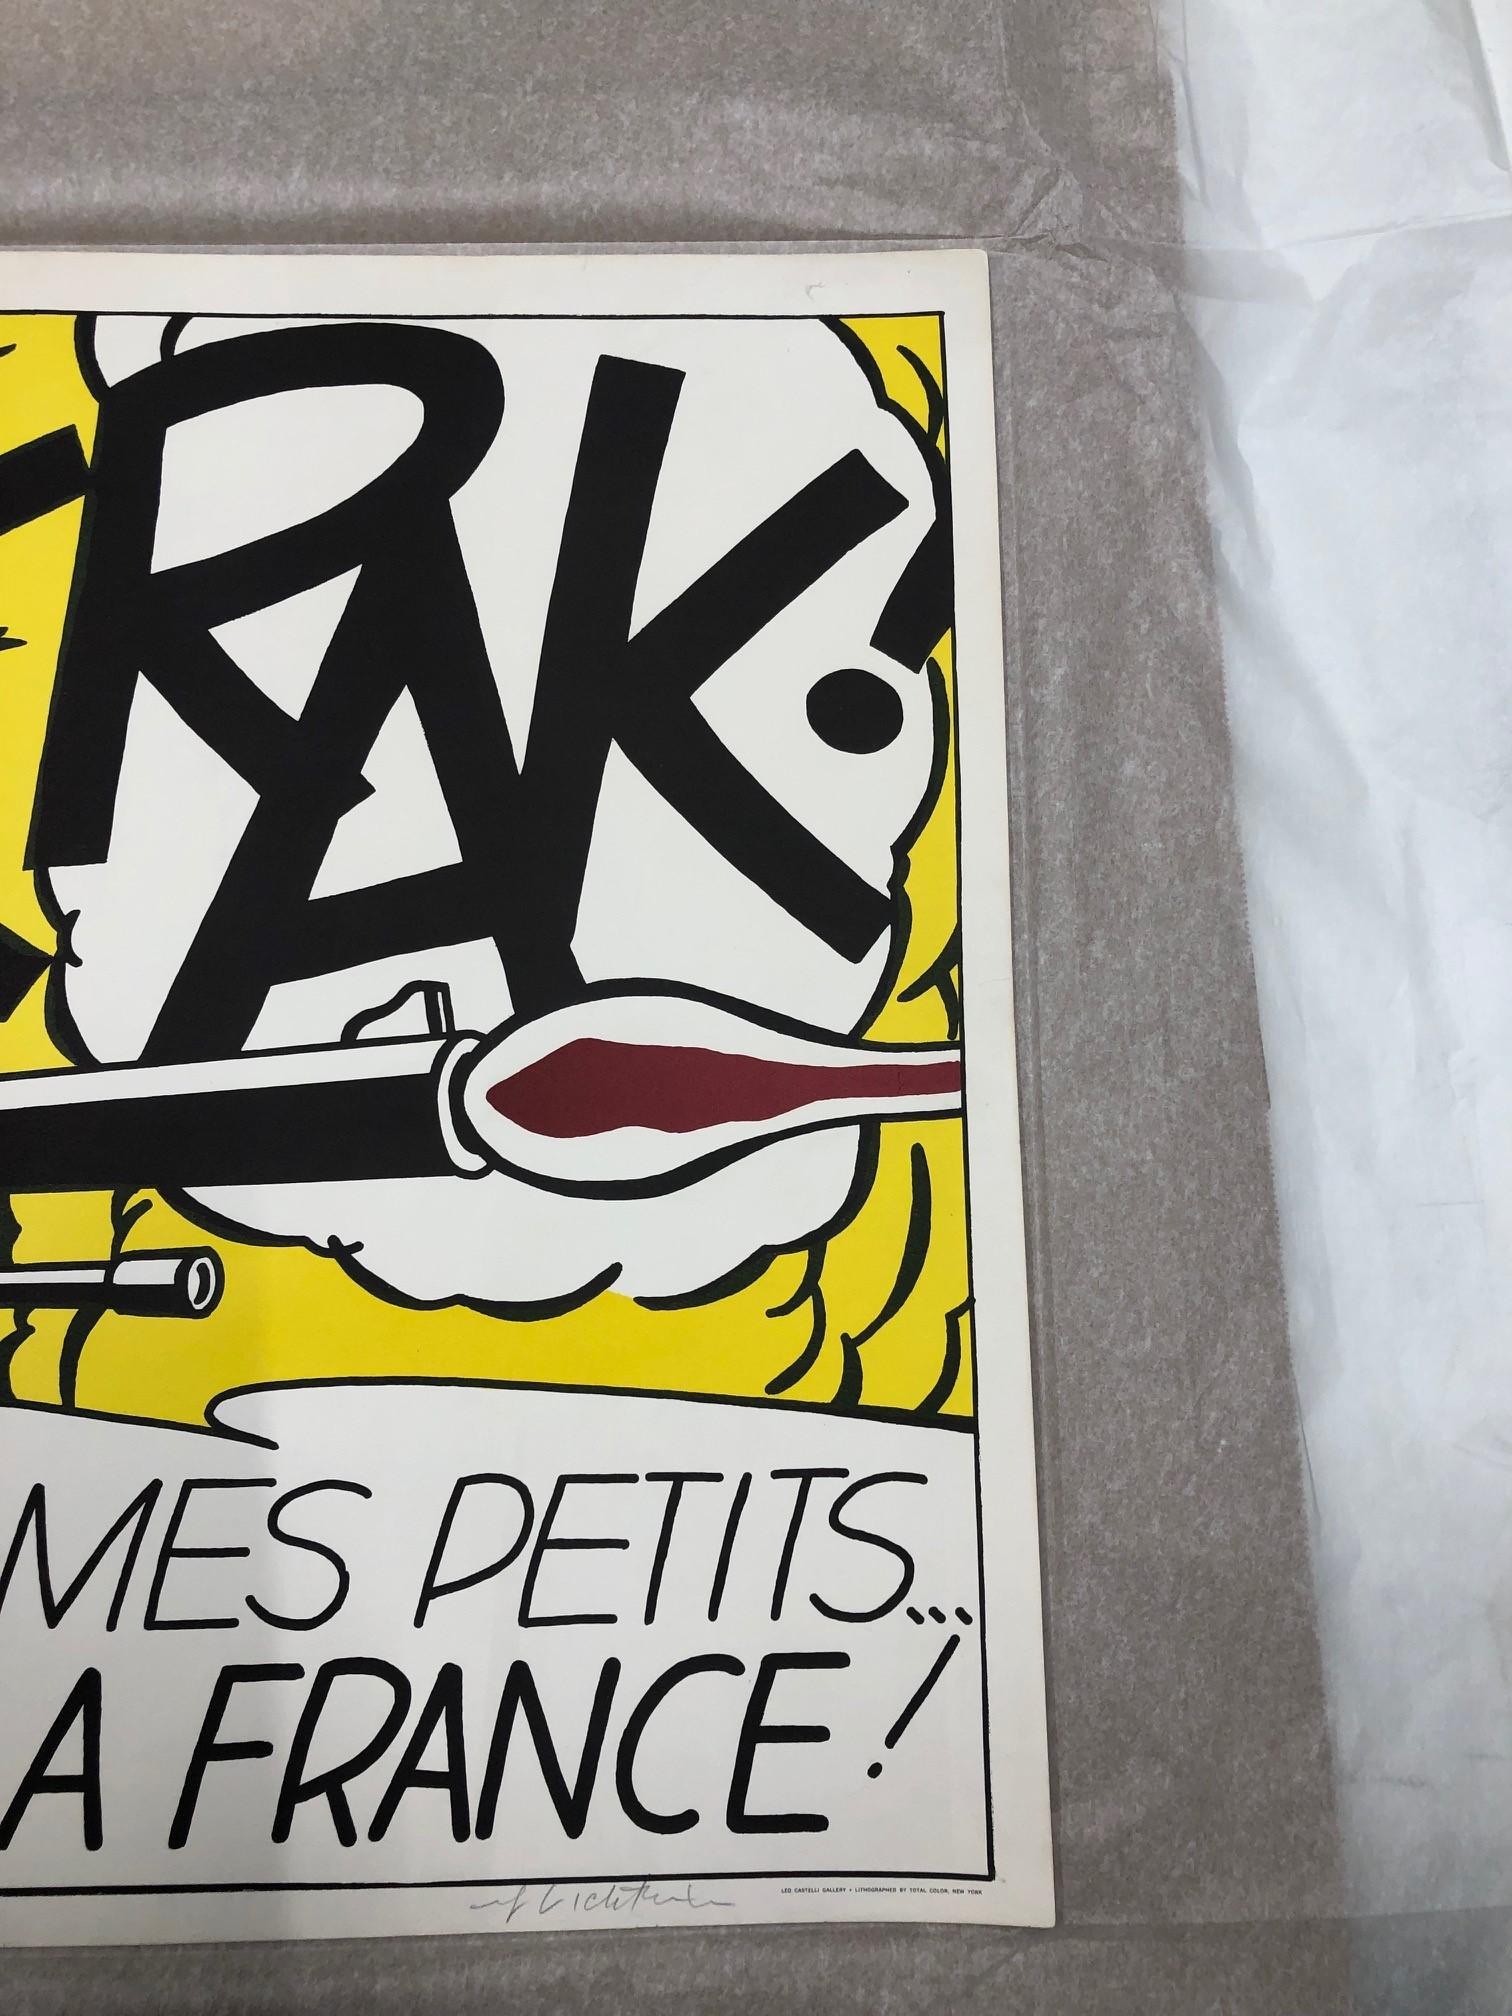 CRAK! 1963 - Pop Art Print by Roy Lichtenstein